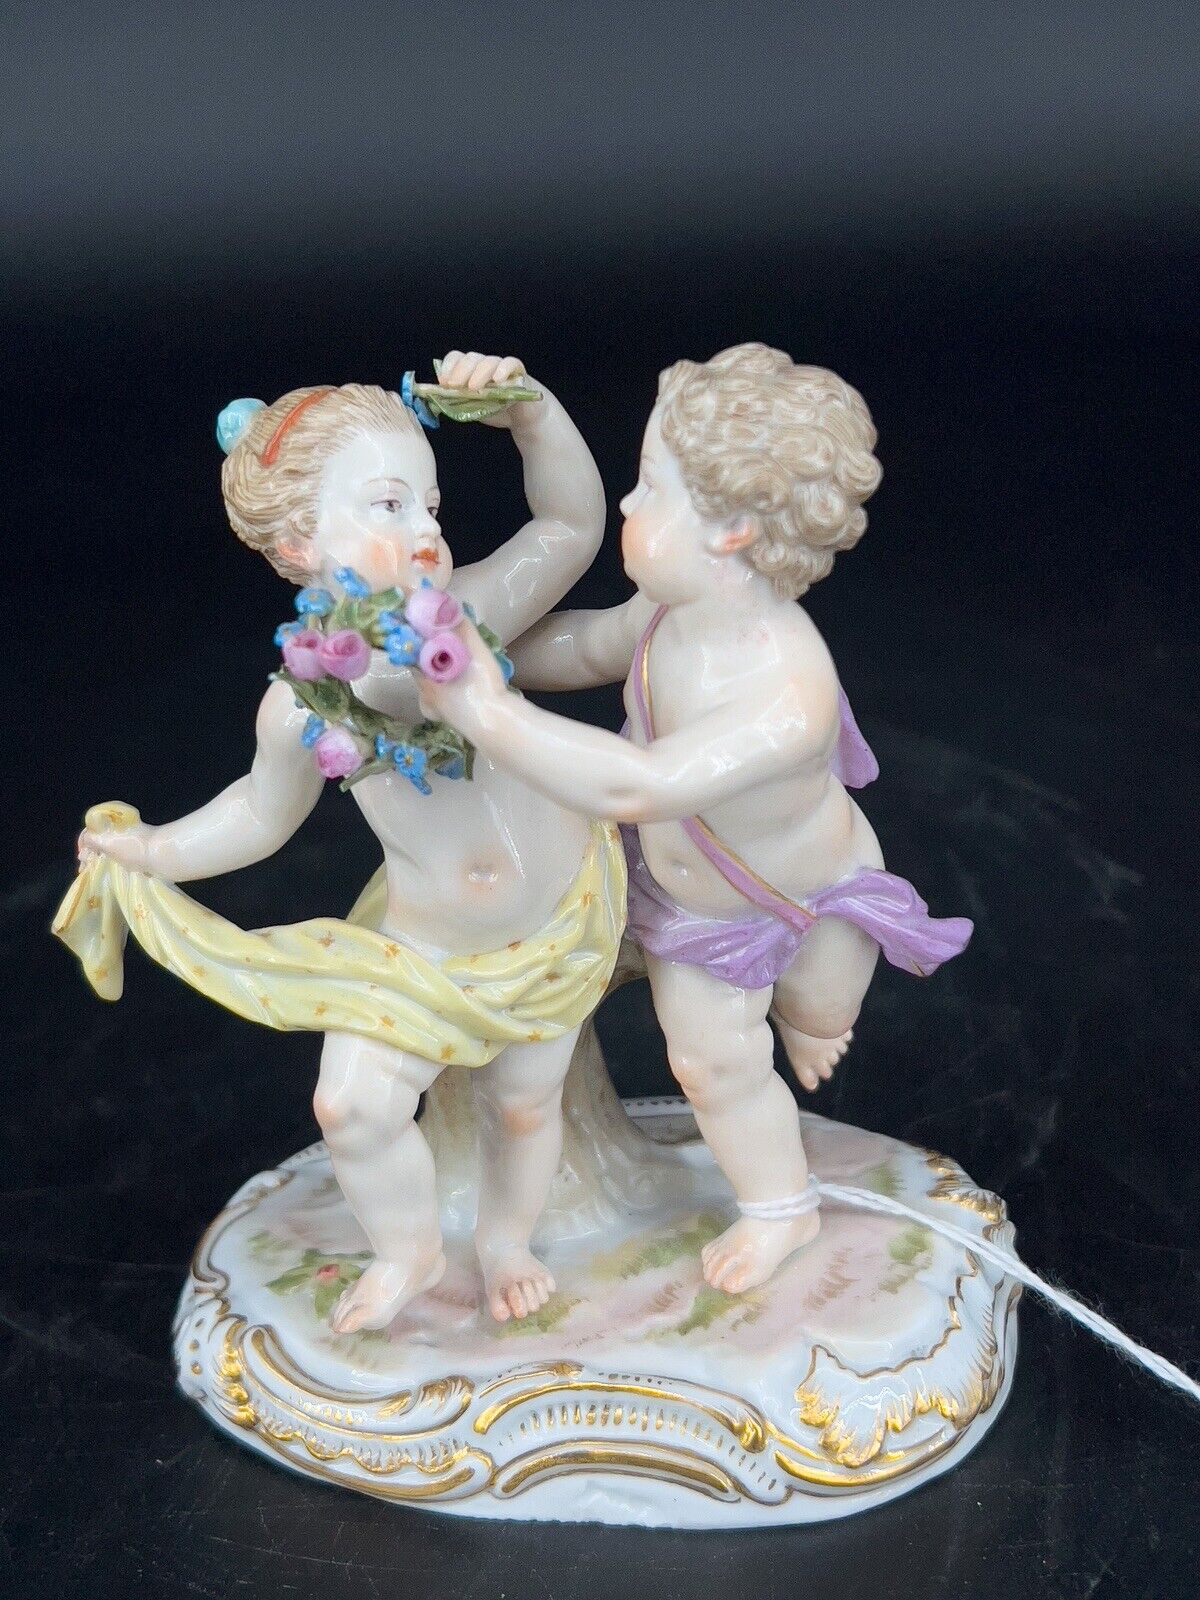 Antique Meissen Cherub/Putti Figurines 19th Century First quality